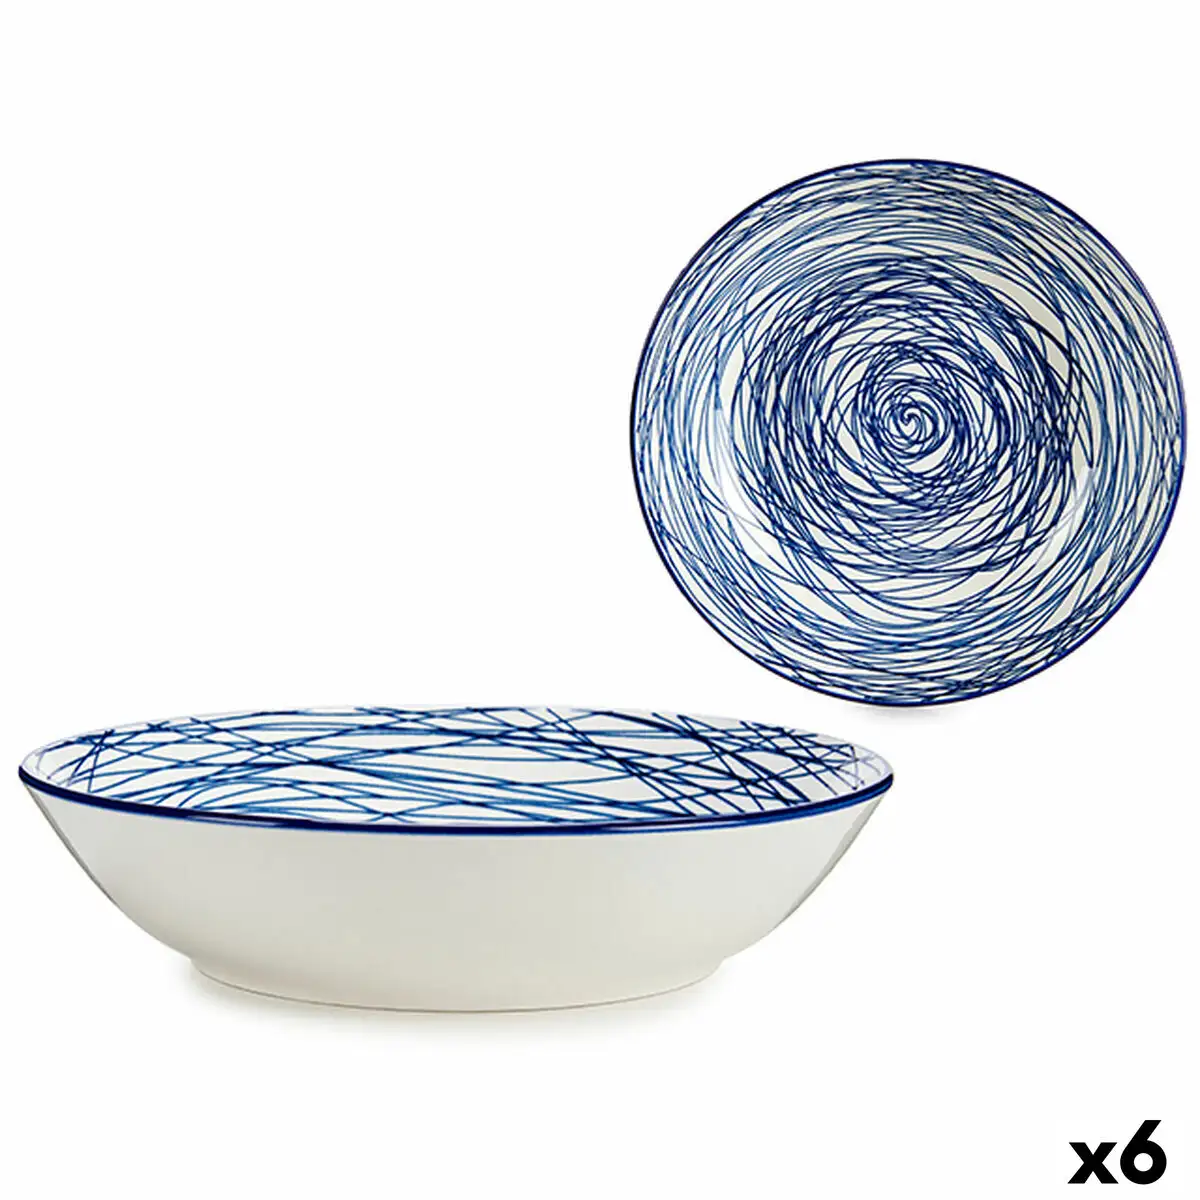 Assiette creuse rayures porcelaine bleu blanc 6 unites 20 x 4 7 x 20 cm _5304. DIAYTAR SENEGAL - Où Choisir est une Célébration de l'Artisanat. Explorez notre boutique en ligne et choisissez des articles qui incarnent l'art et le savoir-faire du Sénégal.